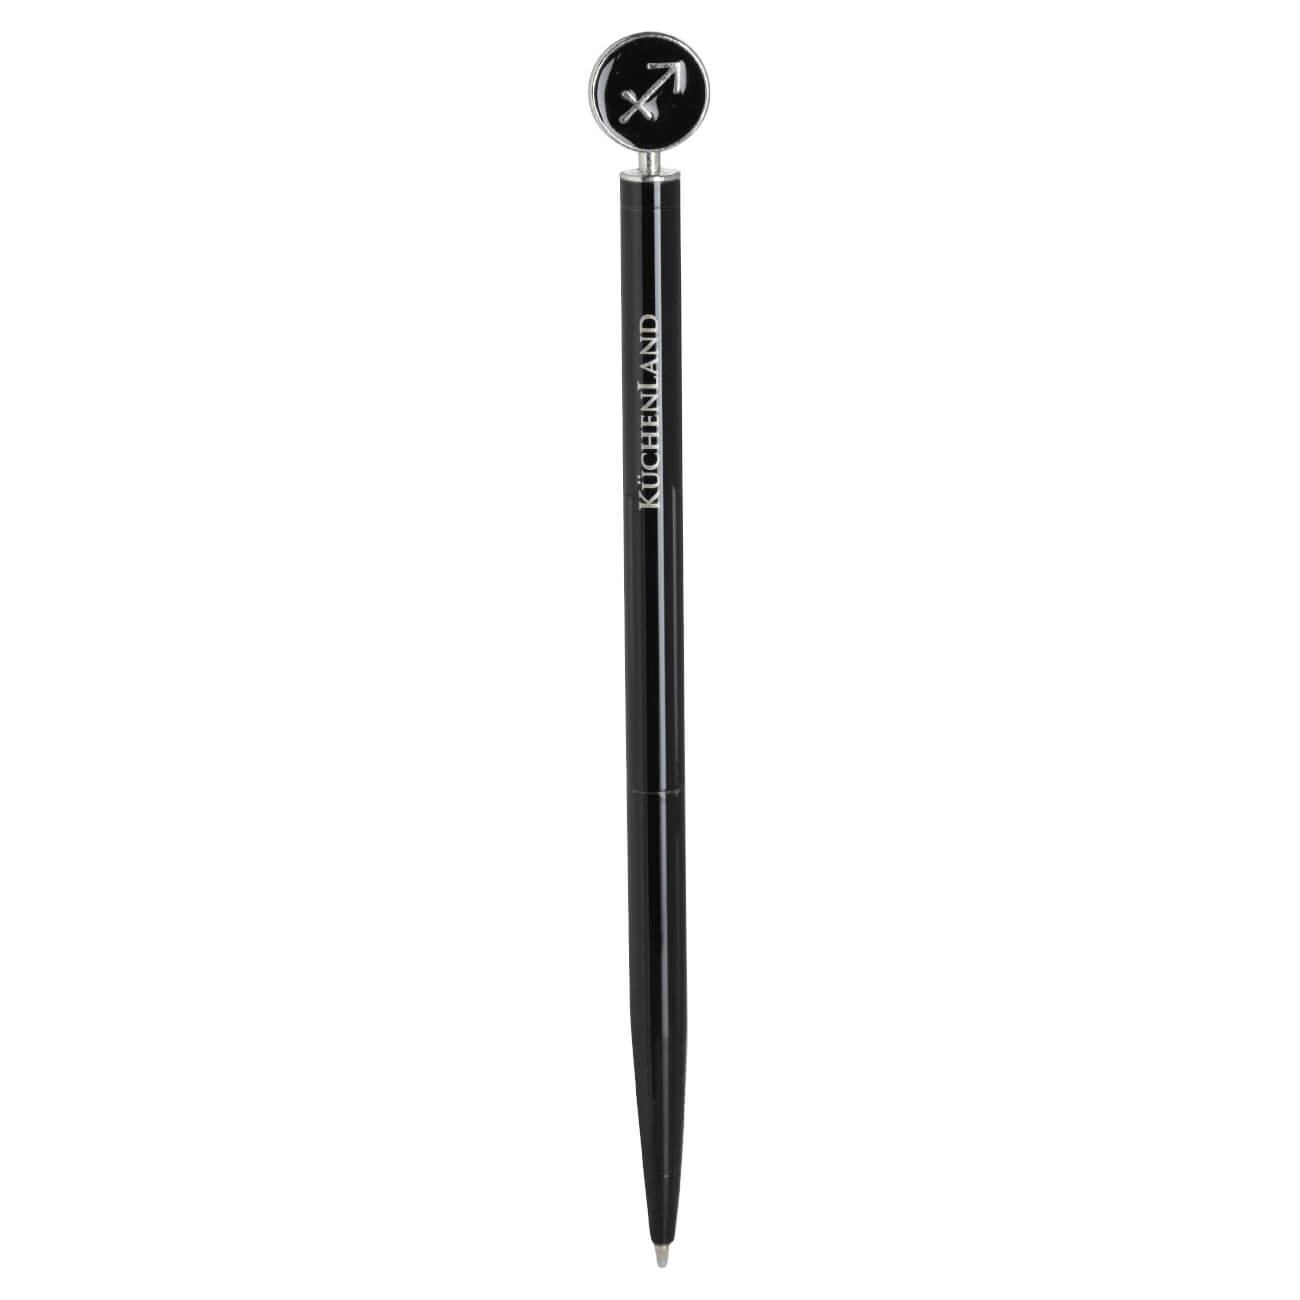 Ручка шариковая, 15 см, с фигуркой, сталь, черно-серебристая, Стрелец, Zodiac изображение № 1